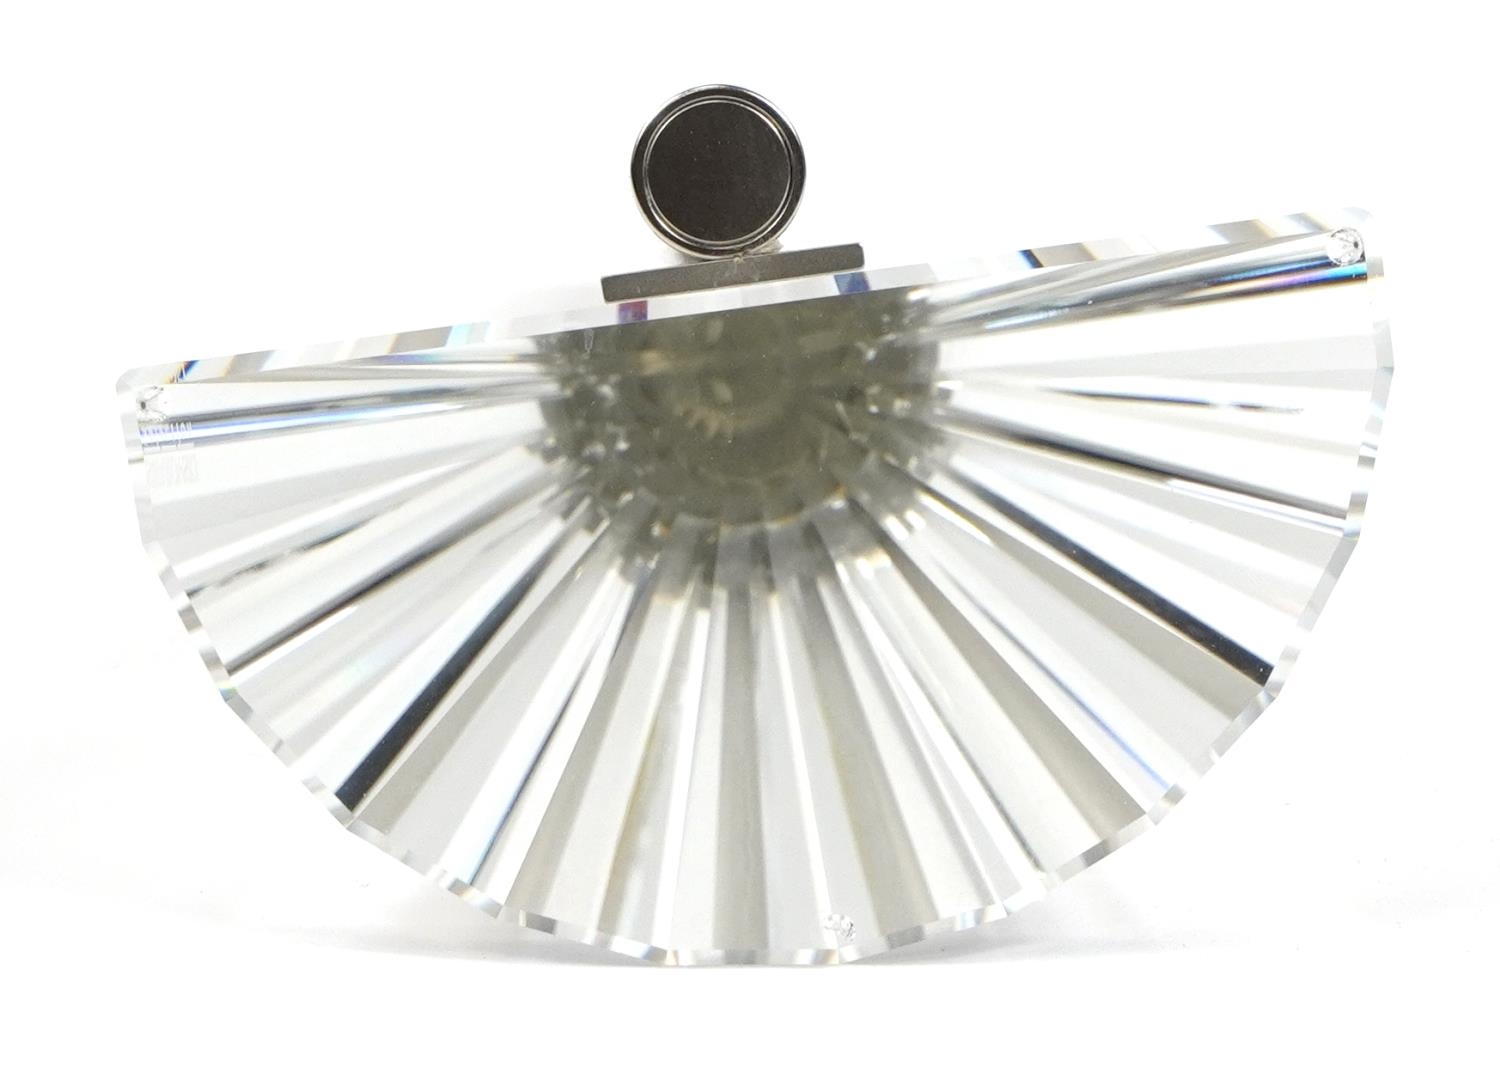 Joel Desgrippes for Swarovski Selection, Solifor Crystal vase with box, 19cm high - Image 4 of 5